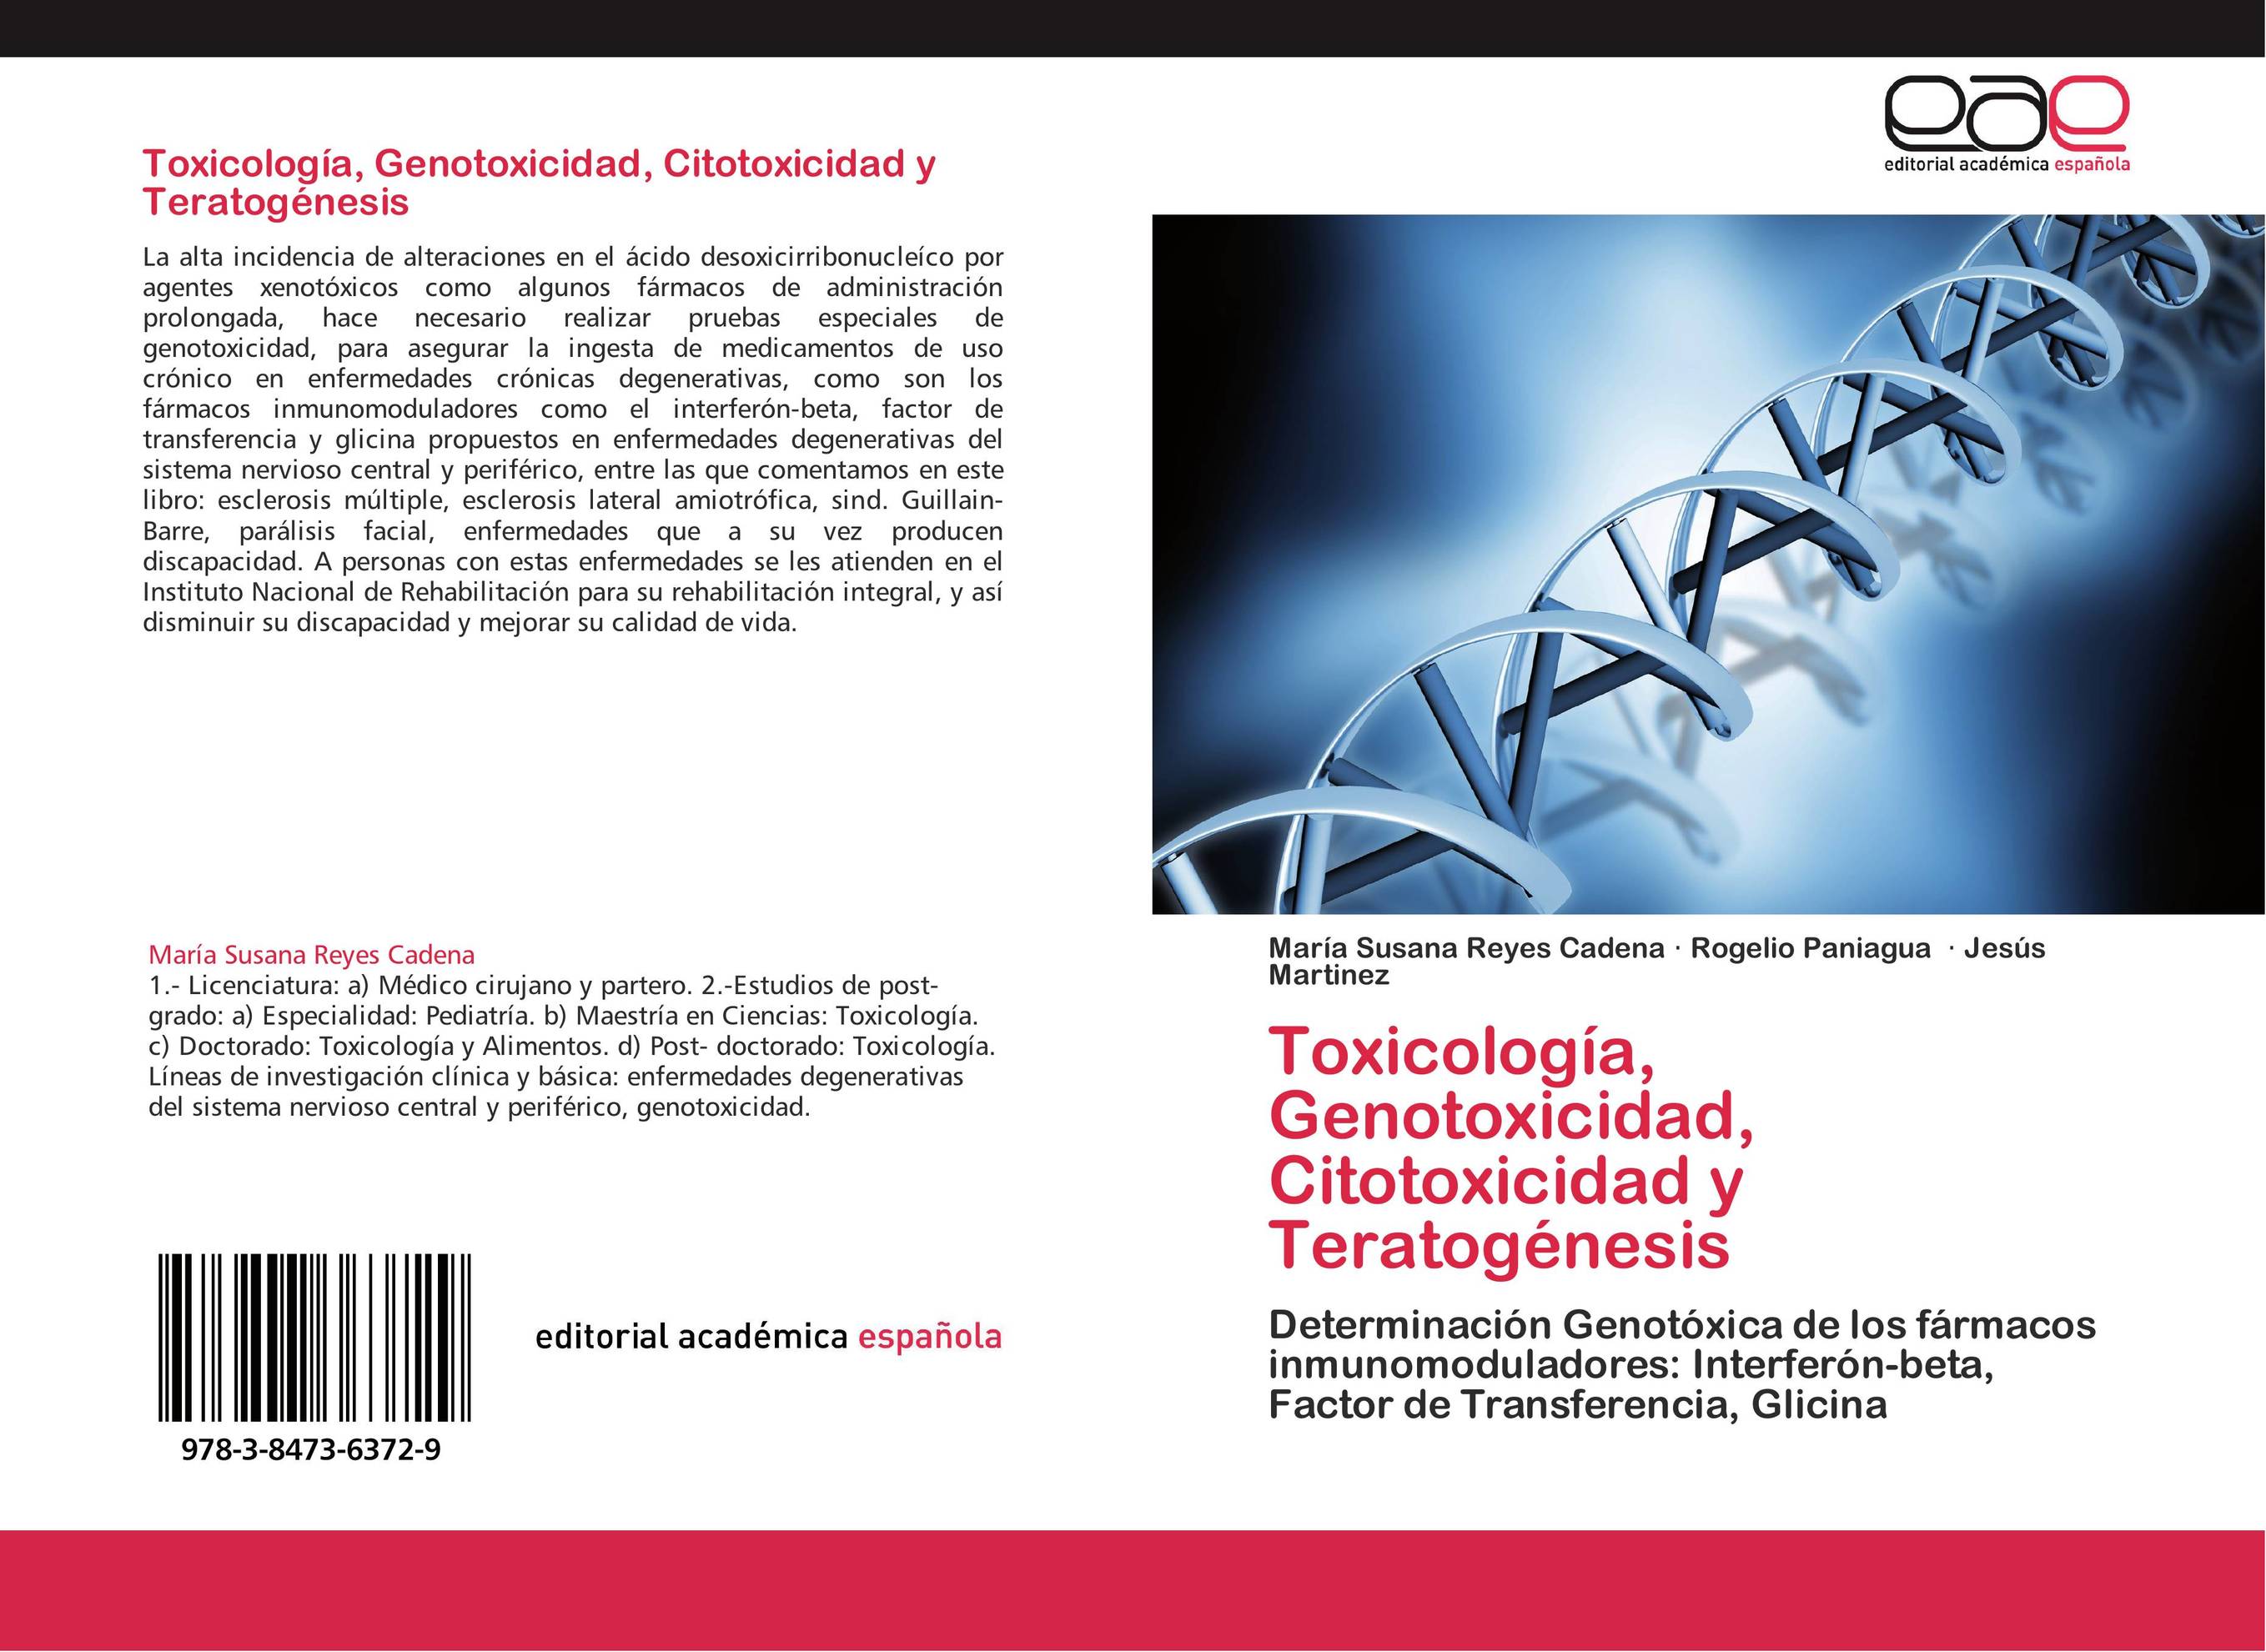 Toxicología, Genotoxicidad, Citotoxicidad y Teratogénesis